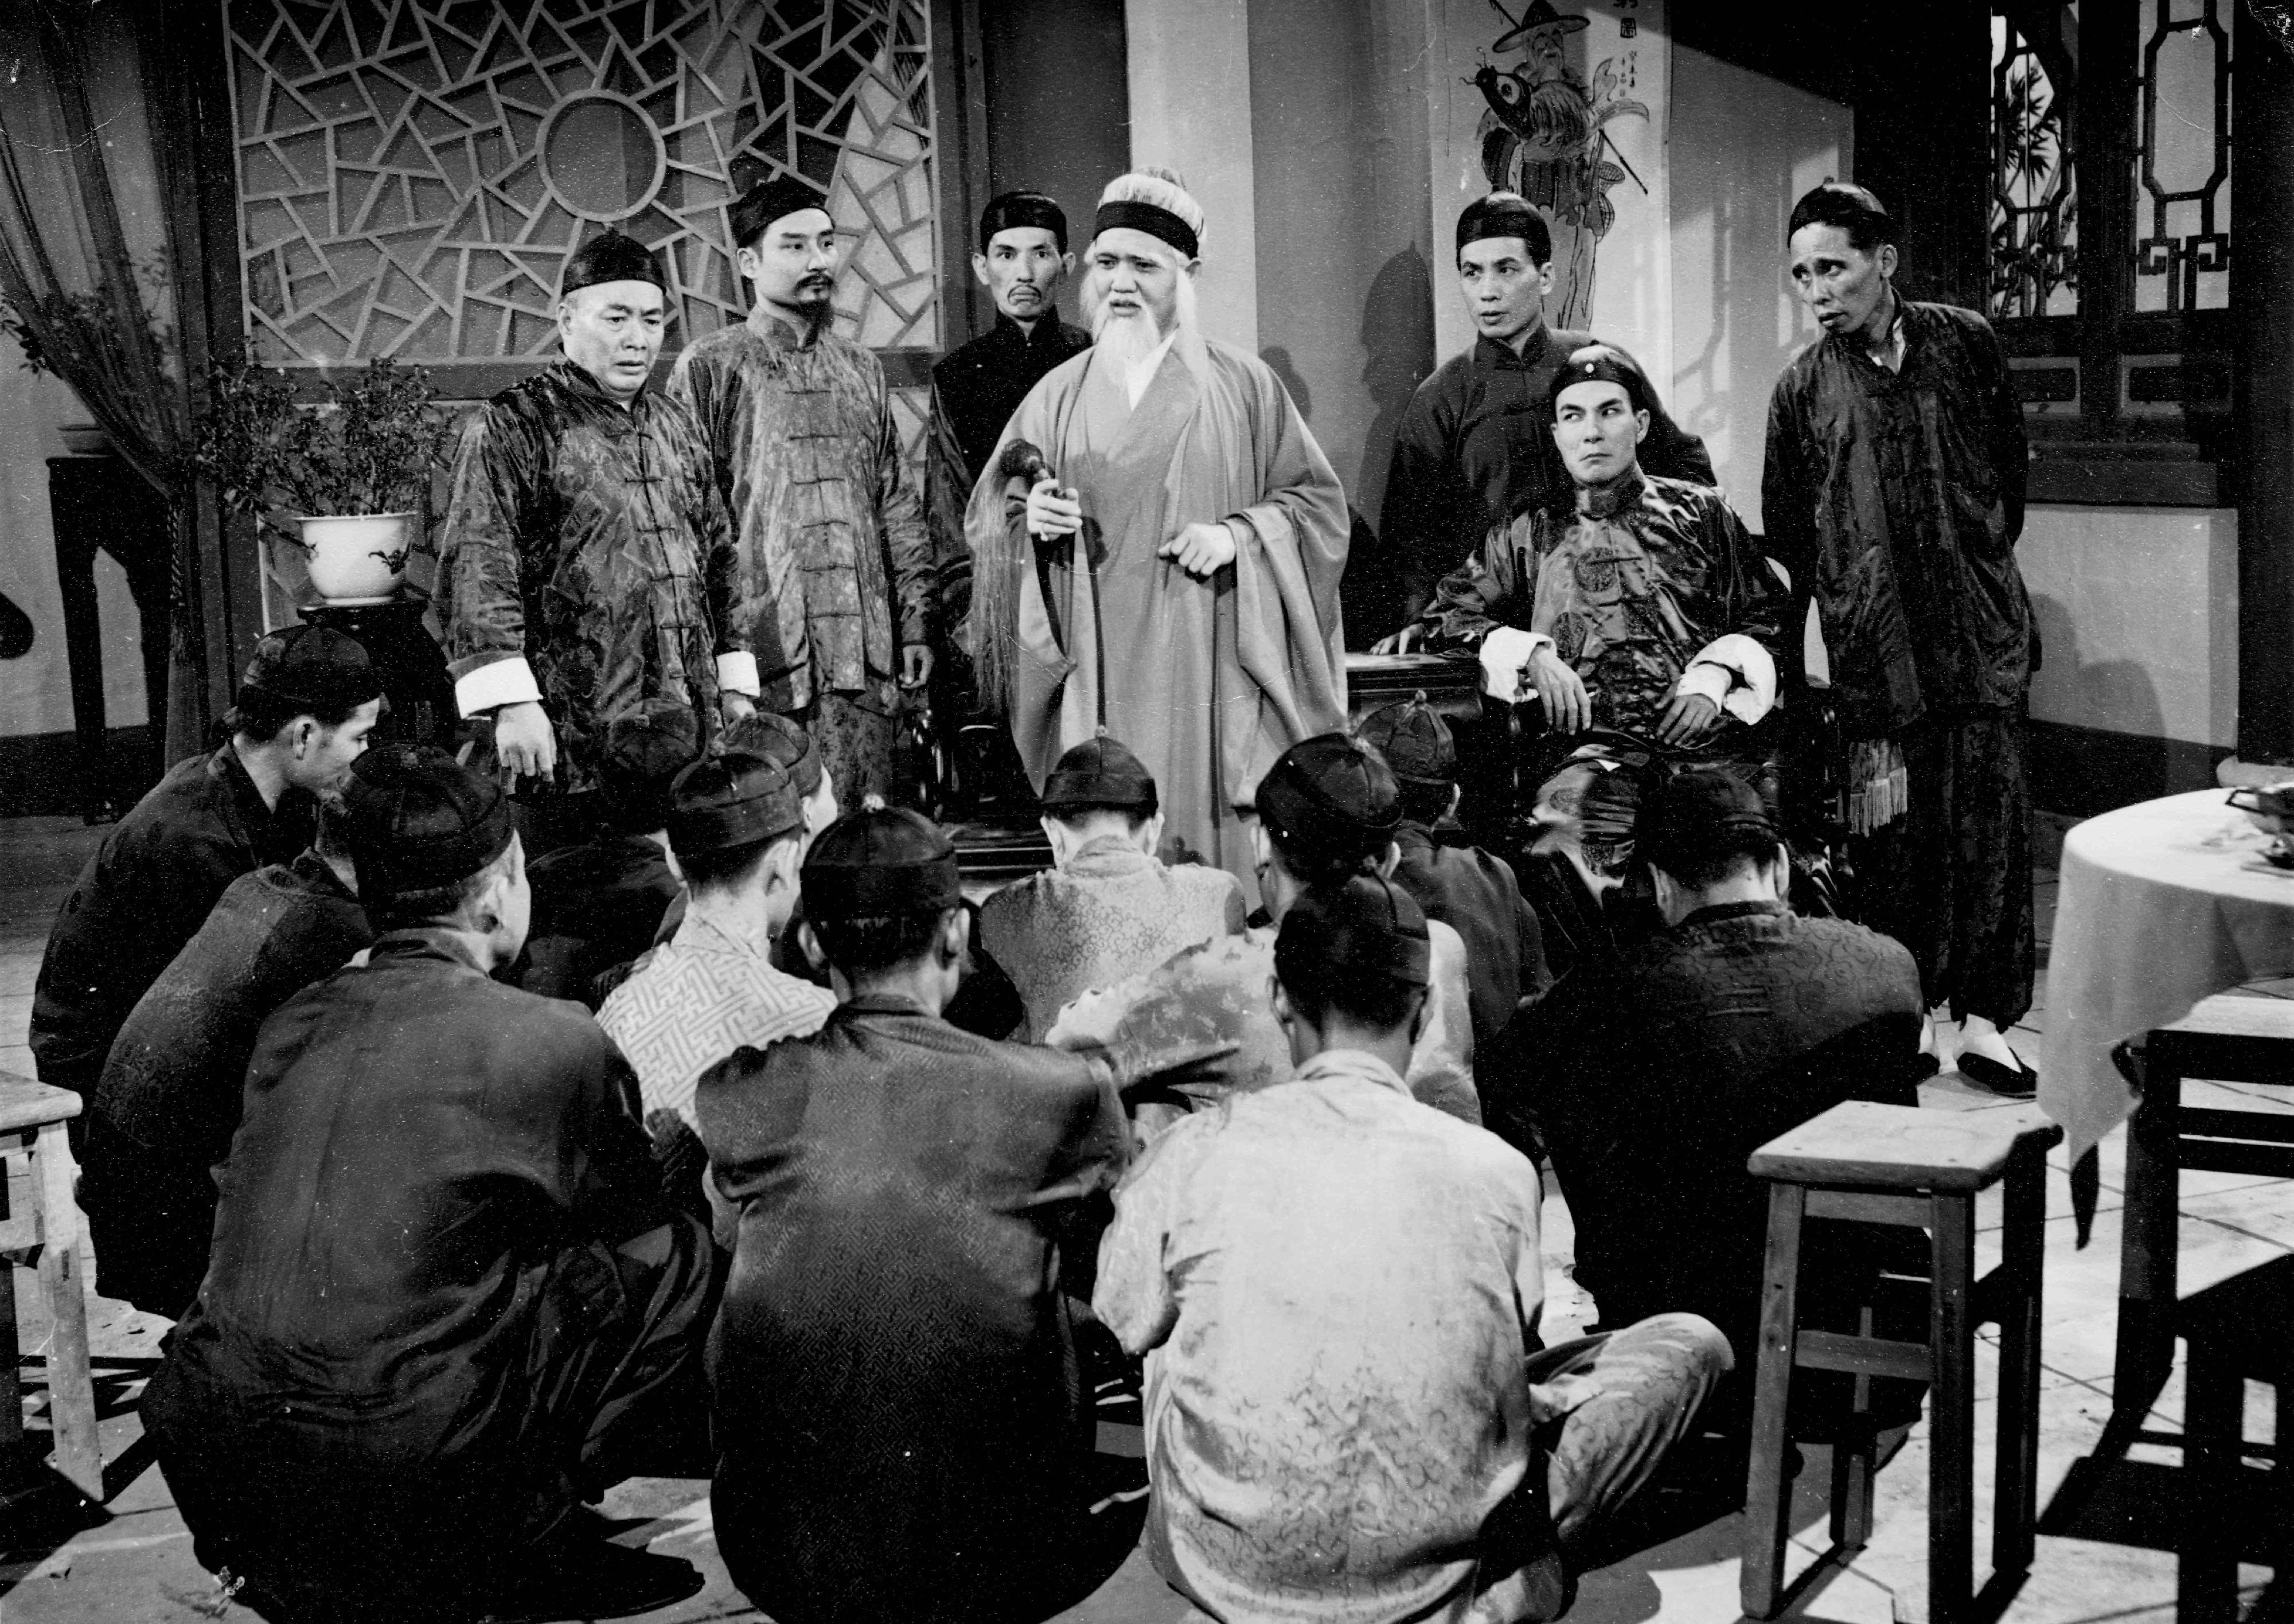 康樂及文化事務署香港電影資料館的「瑰寶情尋」系列在十二月至明年五月以「聲影『留』傳II」為題隆重登場，期間每月的首個星期日將放映兩套主題相近但在不同年代製作的電影，讓觀眾透過電影跨越時空，見證不同年代電影人的感悟和省思。圖示《白鶴英雄傳》（1956）劇照。